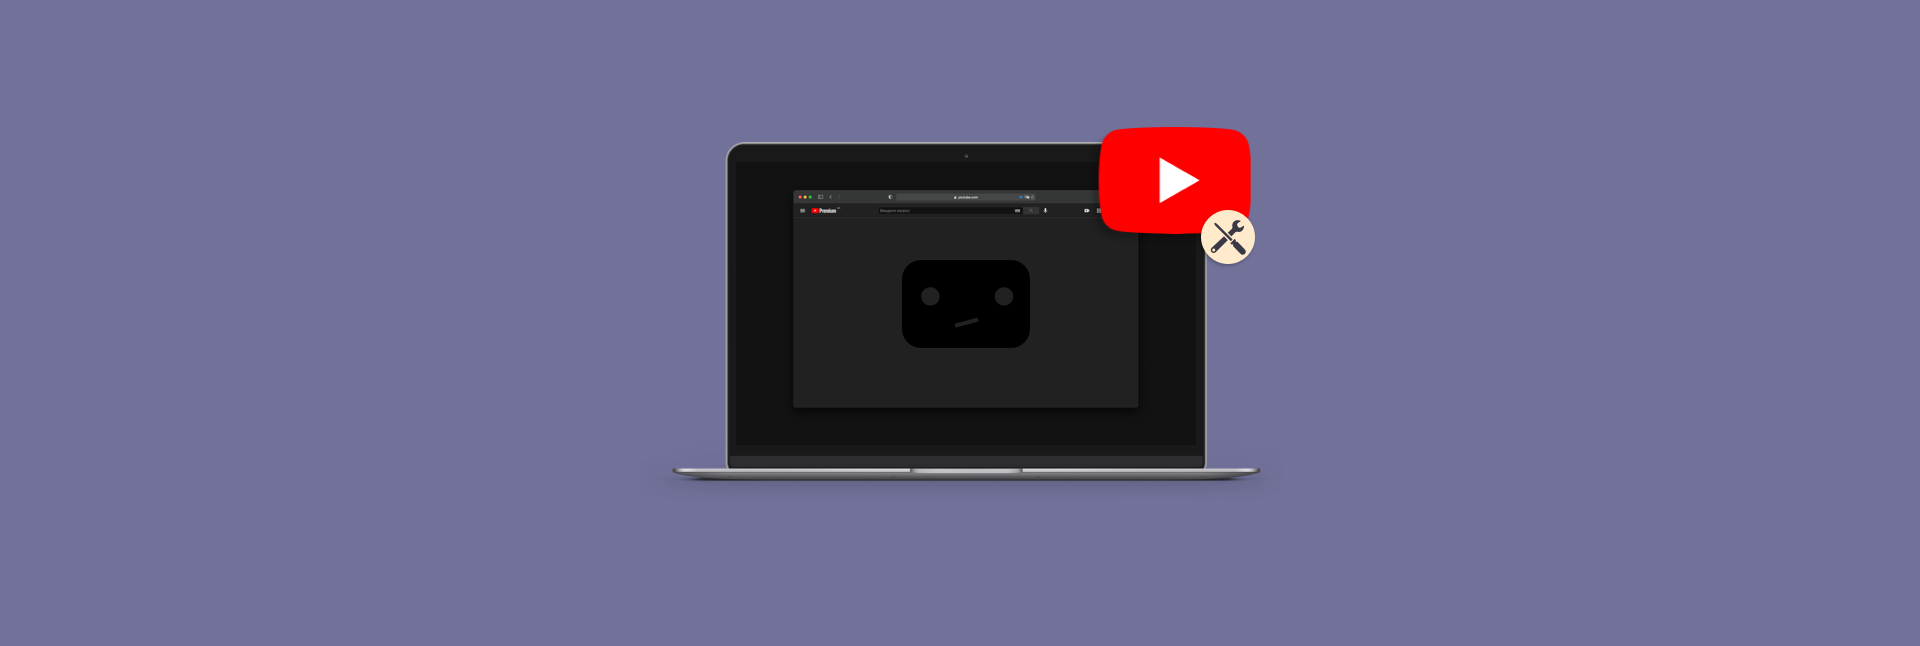 make mac f8 work for youtube music